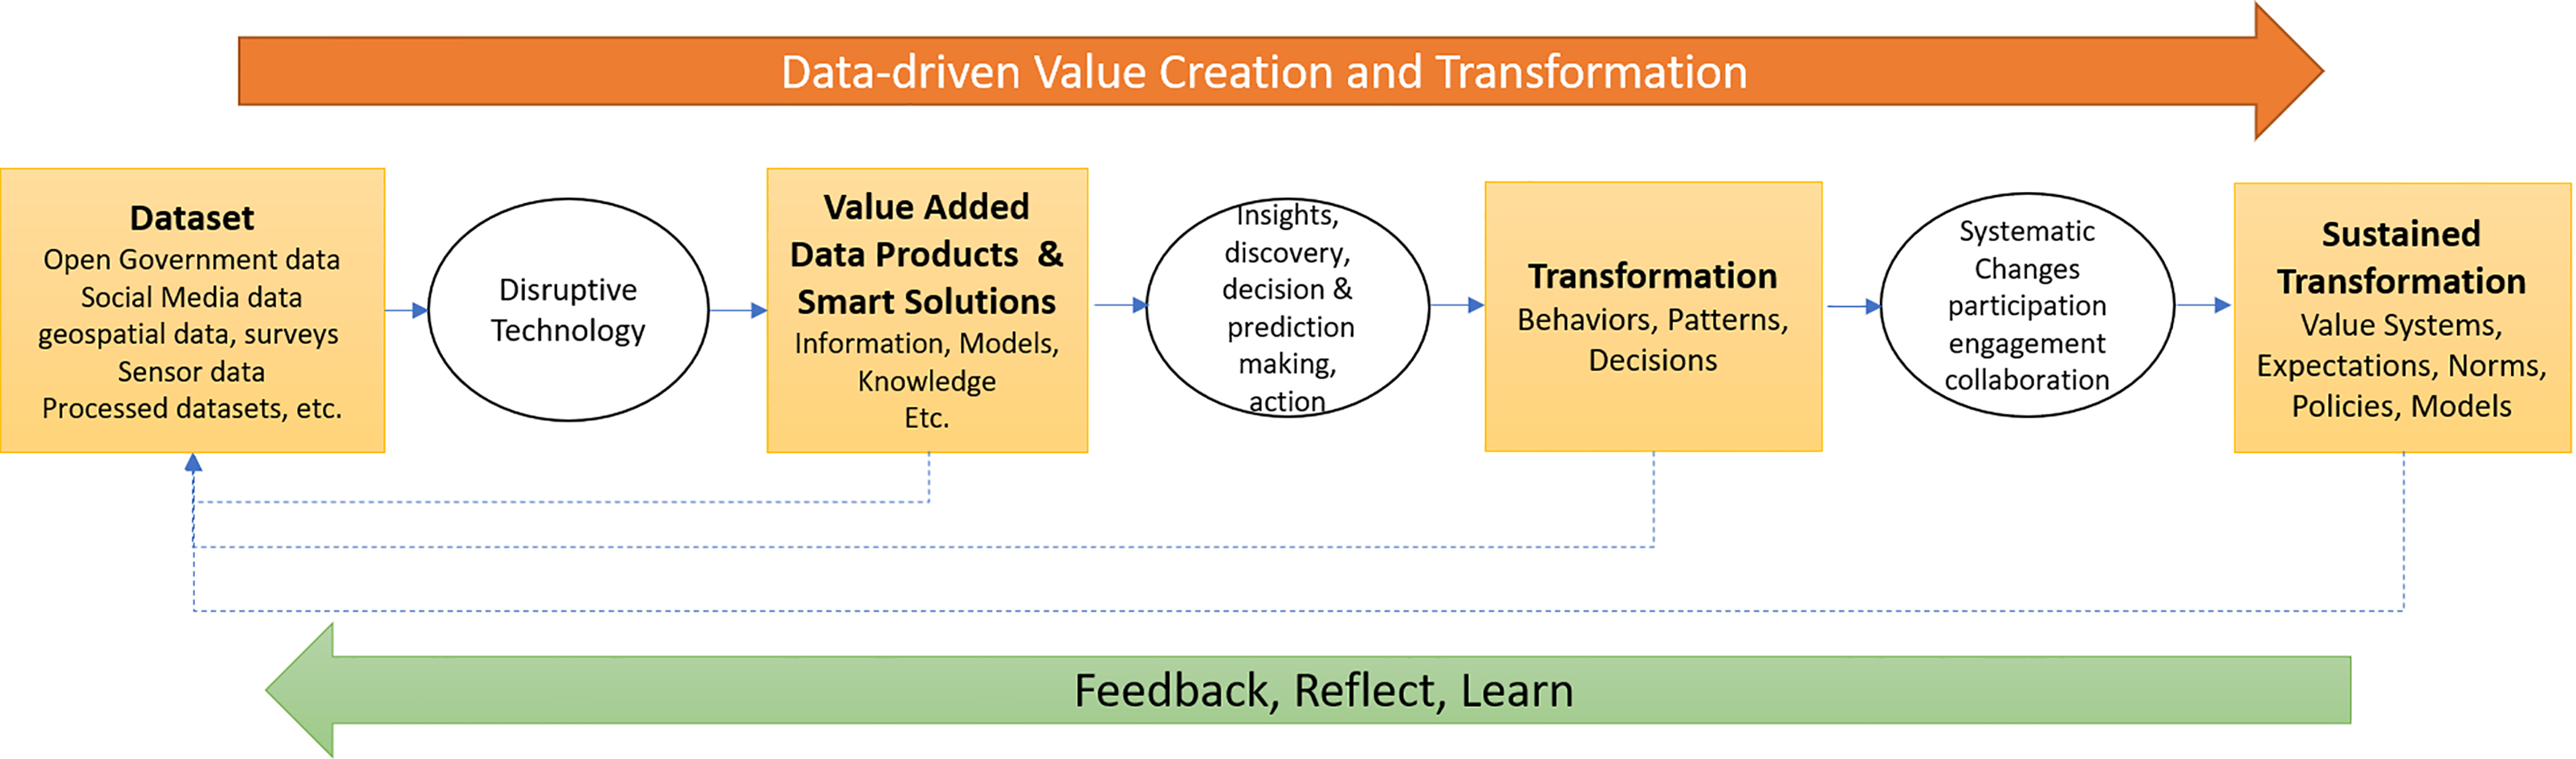 Data-driven value transformation chain.